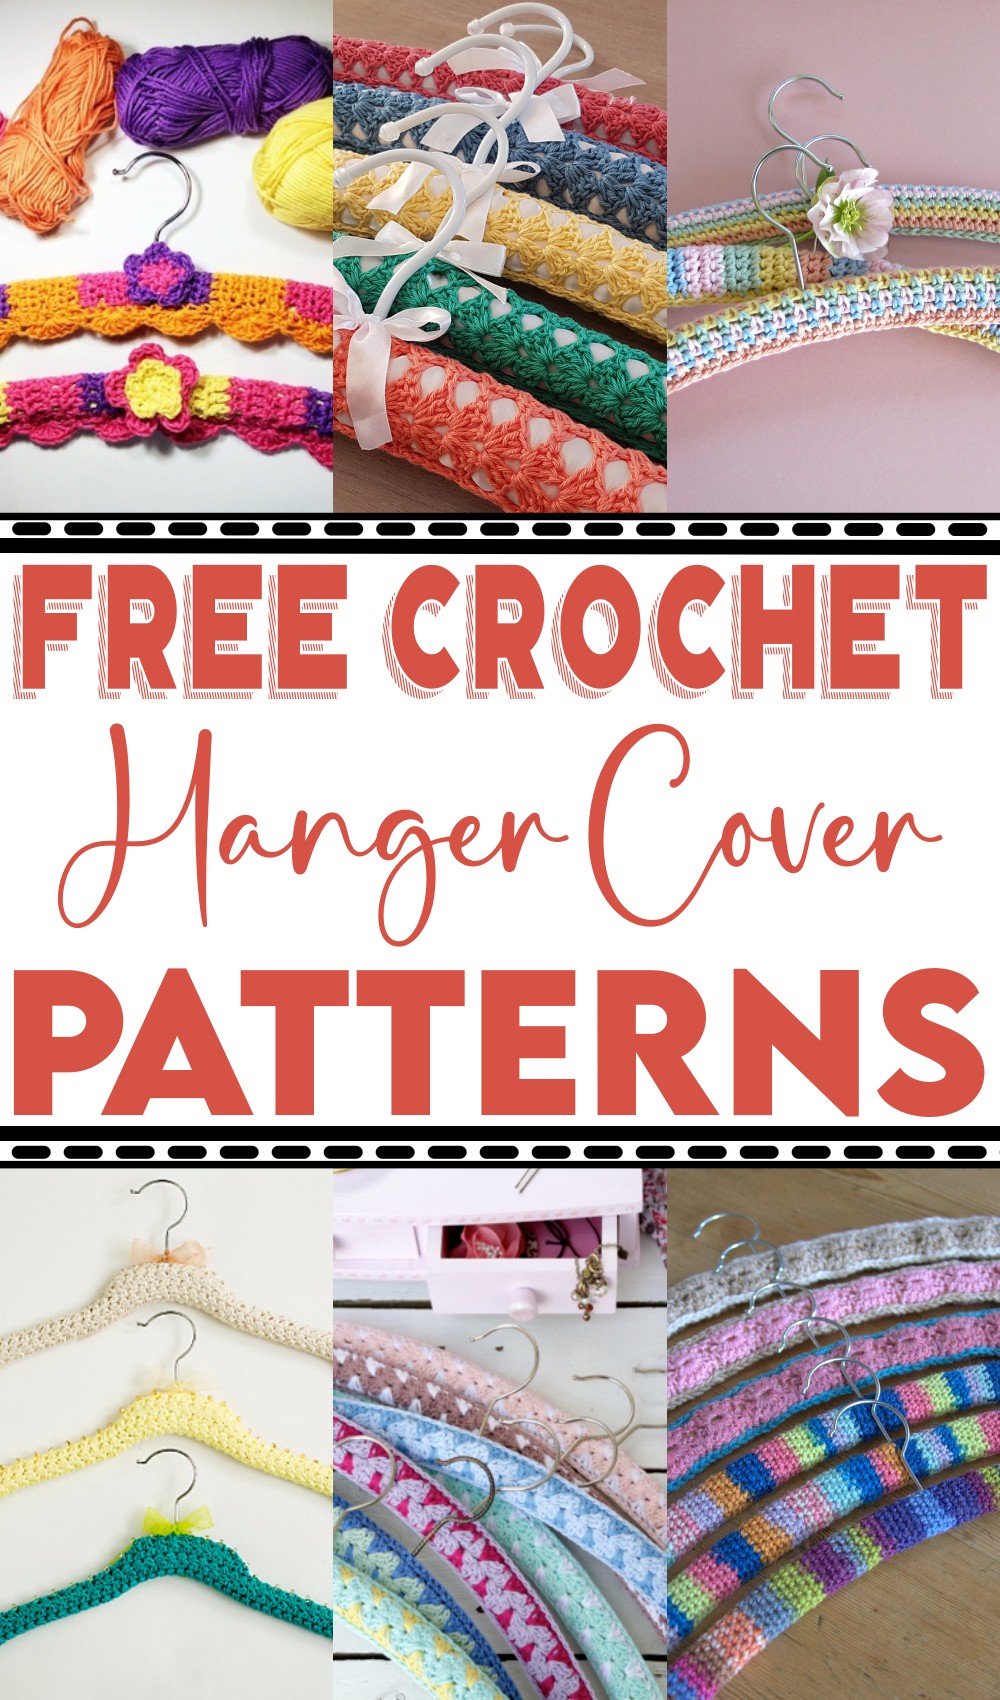 Free Crochet Hanger Cover Patterns